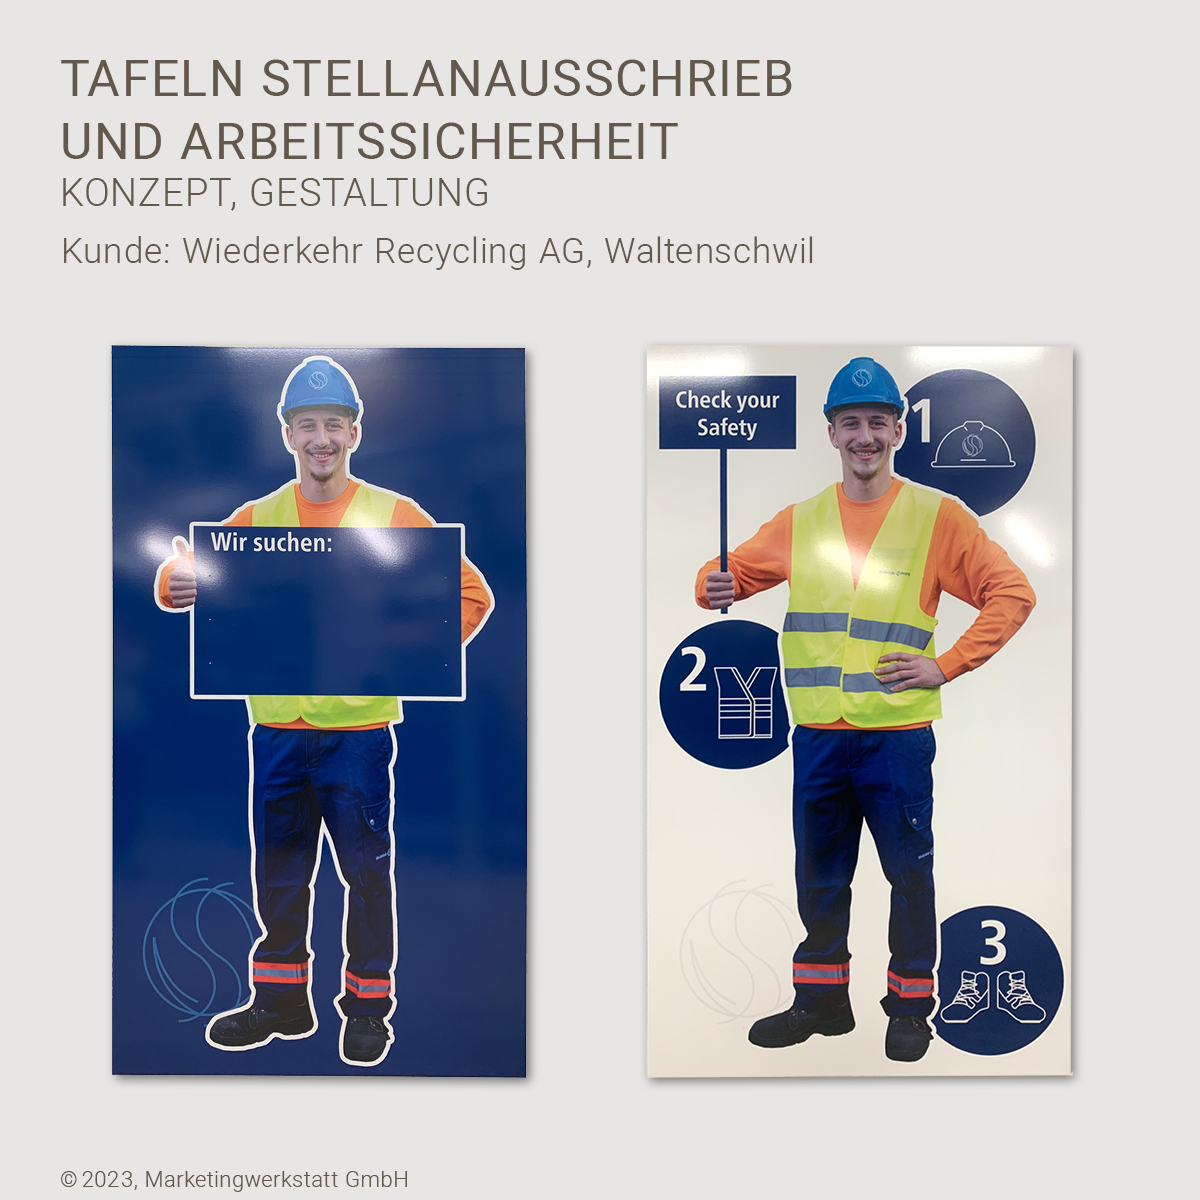 WEB1_MW_Tafeln-Stellenausschrieb-Arbeitssicherheit-Wiederkehr-Recycling_04-2023